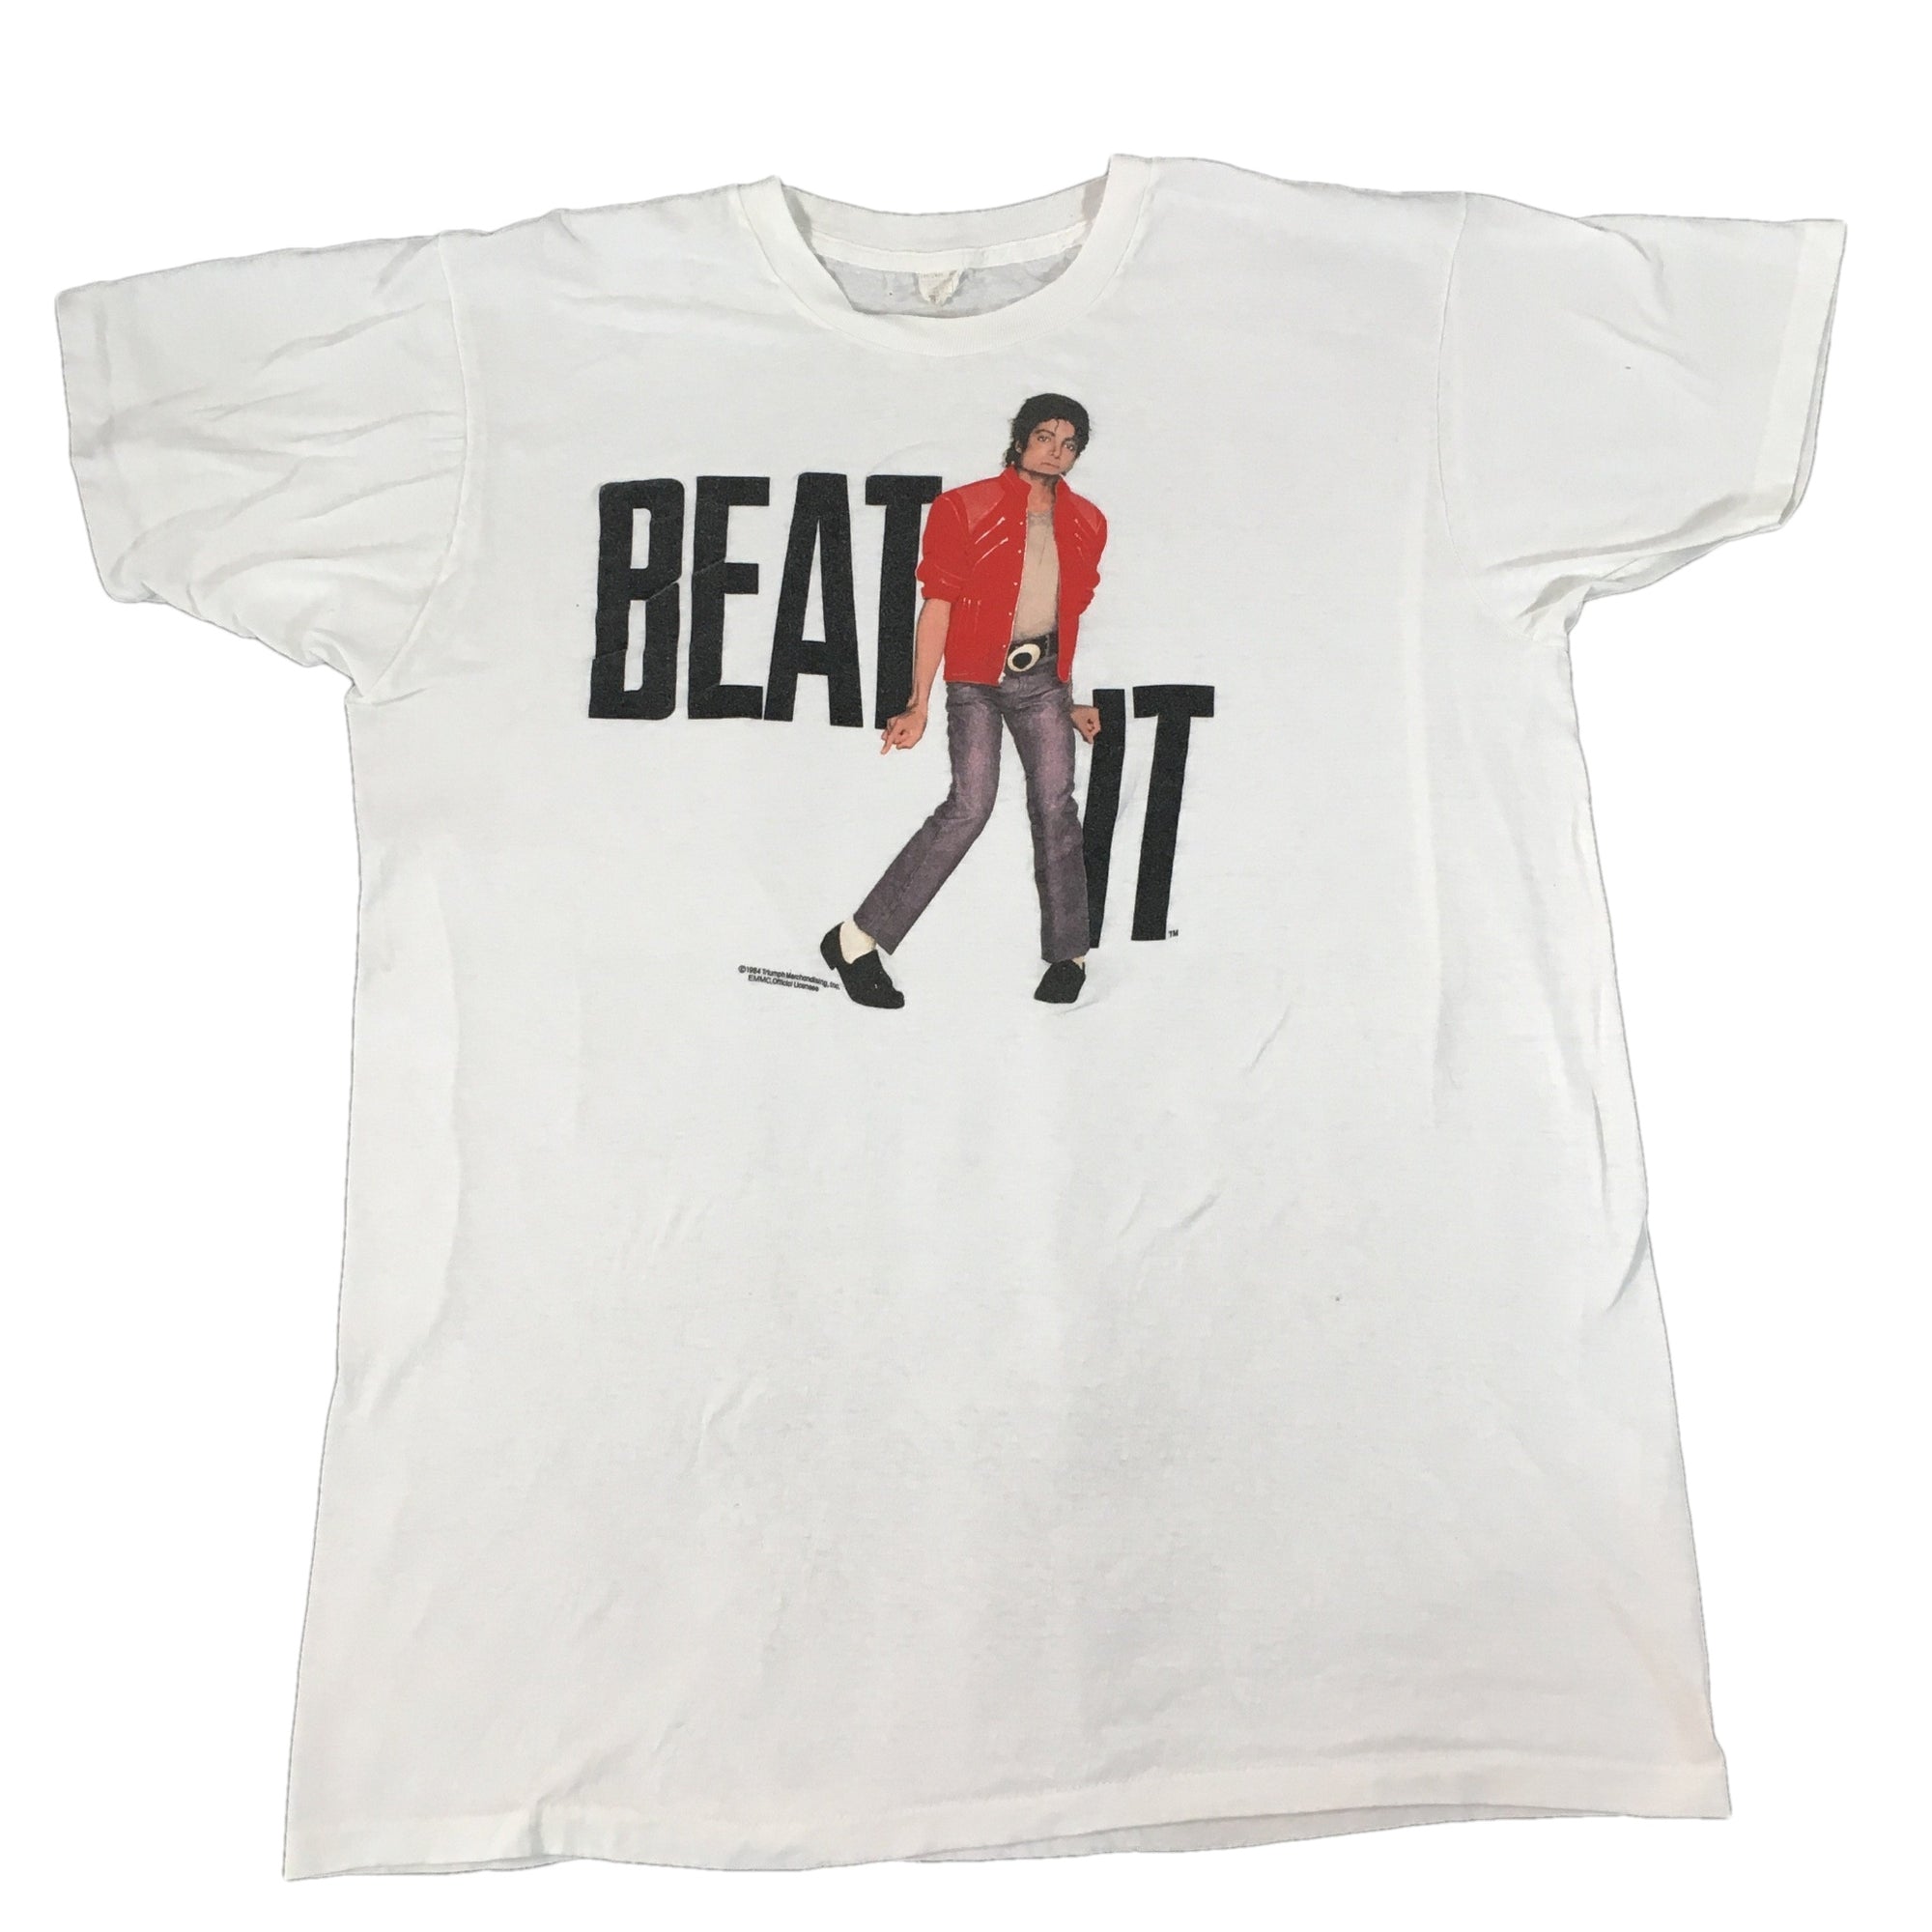 Vintage Michael Jackon "Beat It" T-Shirt - jointcustodydc